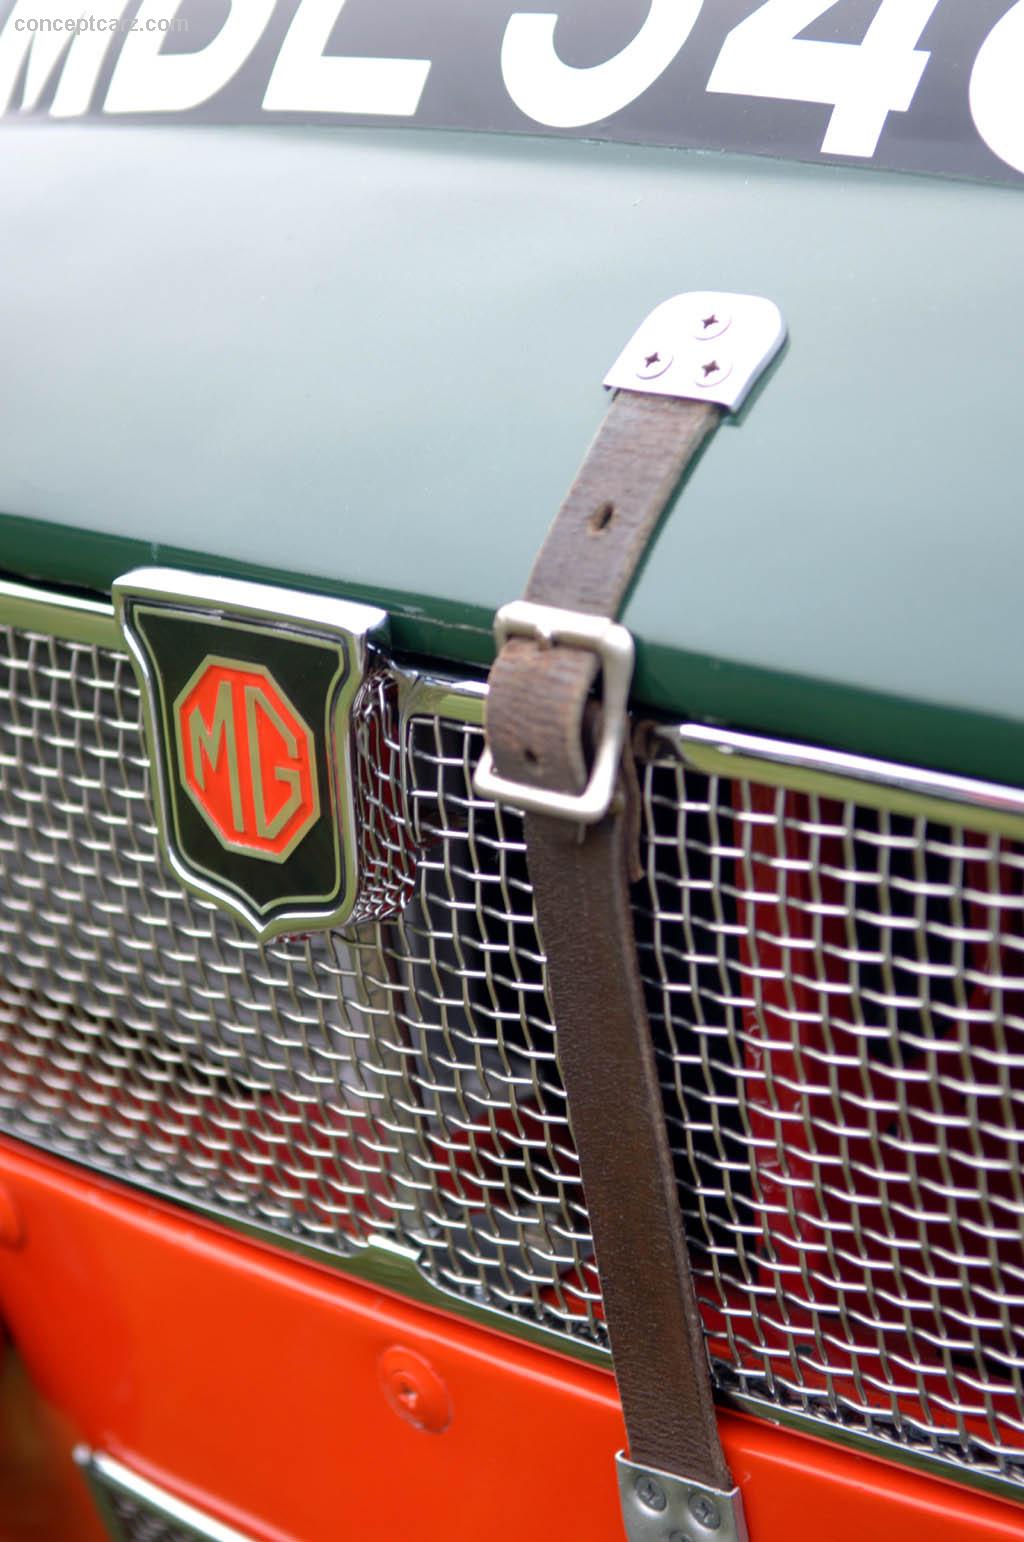 1967 MG C GTS